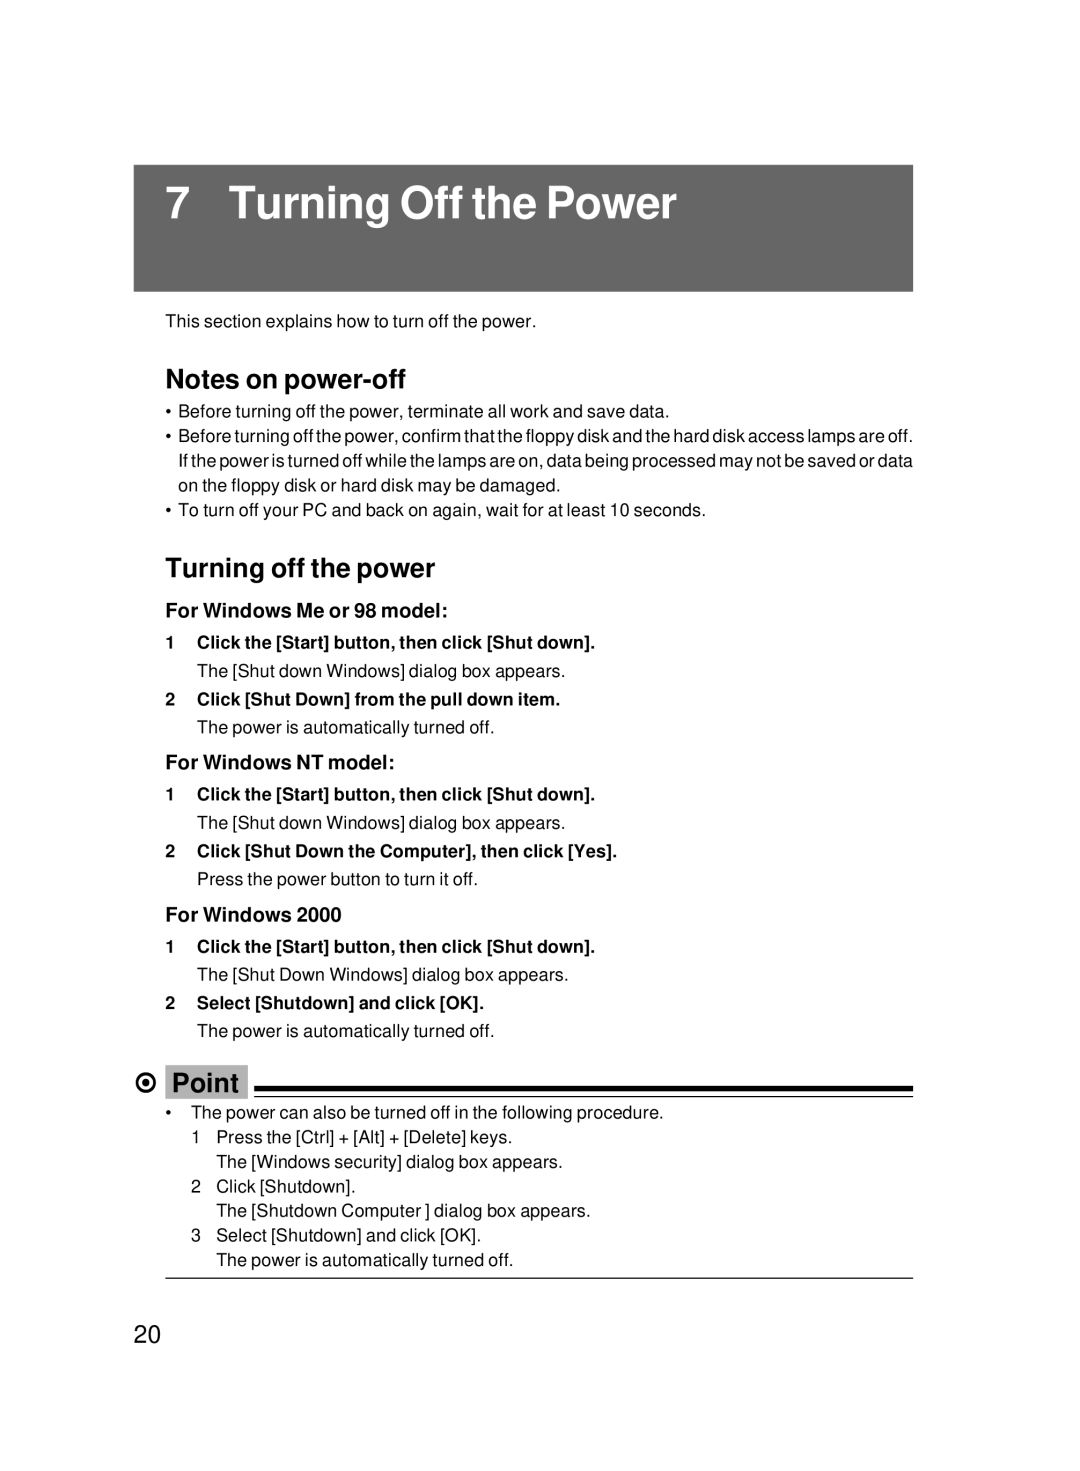 Fujitsu 8000 SERIES Turning Off the Power, Turning off the power, For Windows Me or 98 model, For Windows NT model 